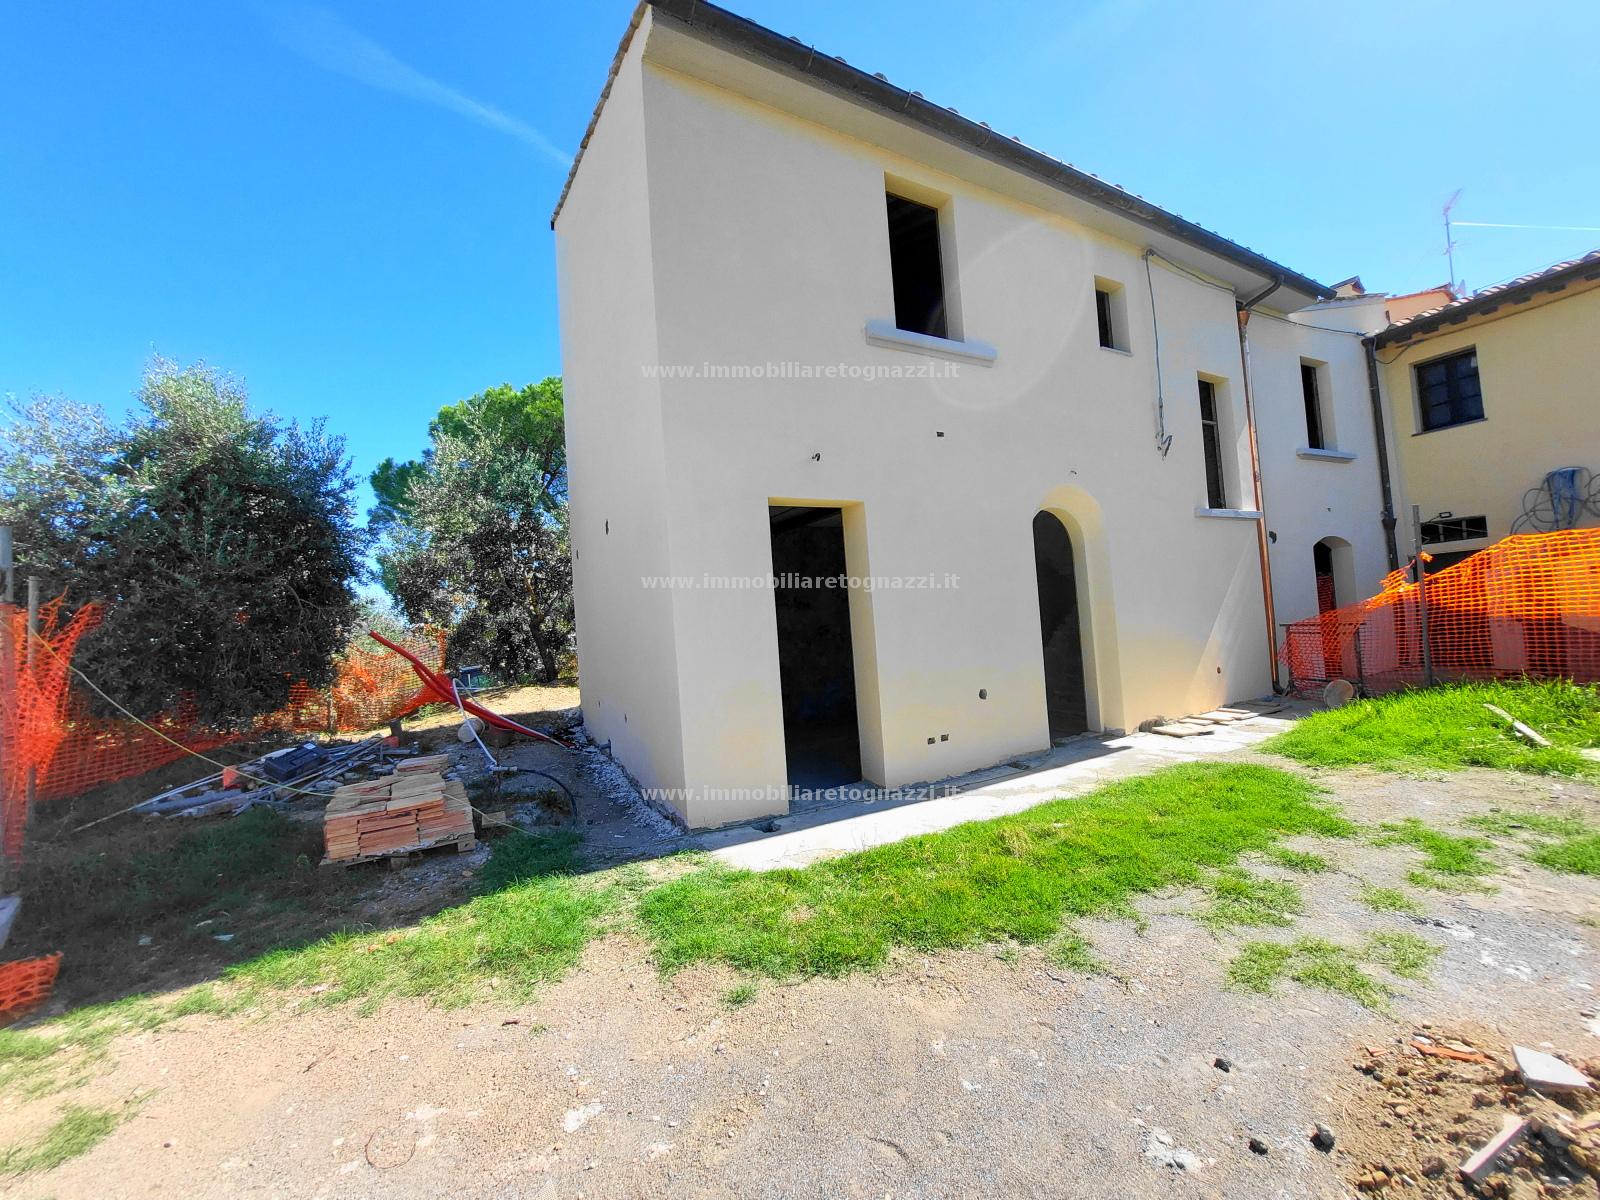 Villa a Schiera in vendita a Montespertoli, 3 locali, prezzo € 280.000 | CambioCasa.it